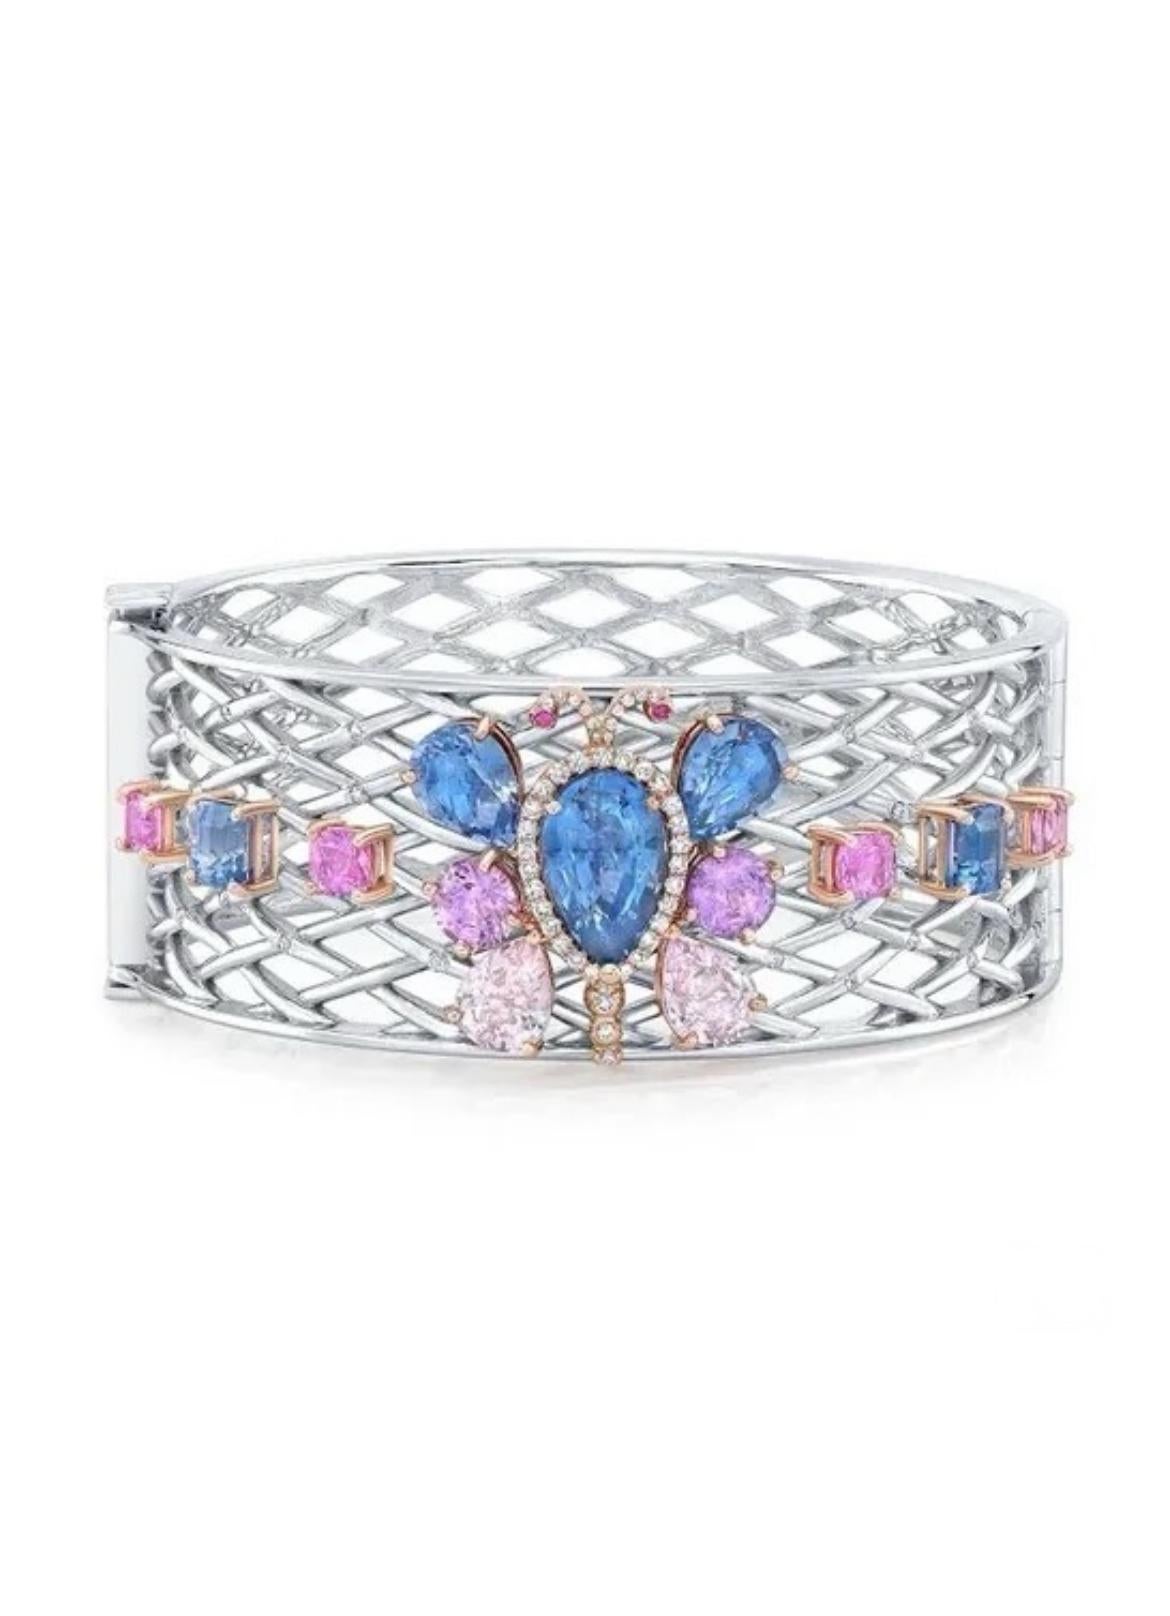 20,17 Karat Ceylon-Saphire werden in diesem wunderschönen Armband aus 18 Karat Weiß- und Roségold gefeiert. 

Die Saphire werden von weißen, eisigen Diamanten von insgesamt 0,41 Karat akzentuiert.

Der birnenförmige blaue Saphir in der Mitte wiegt